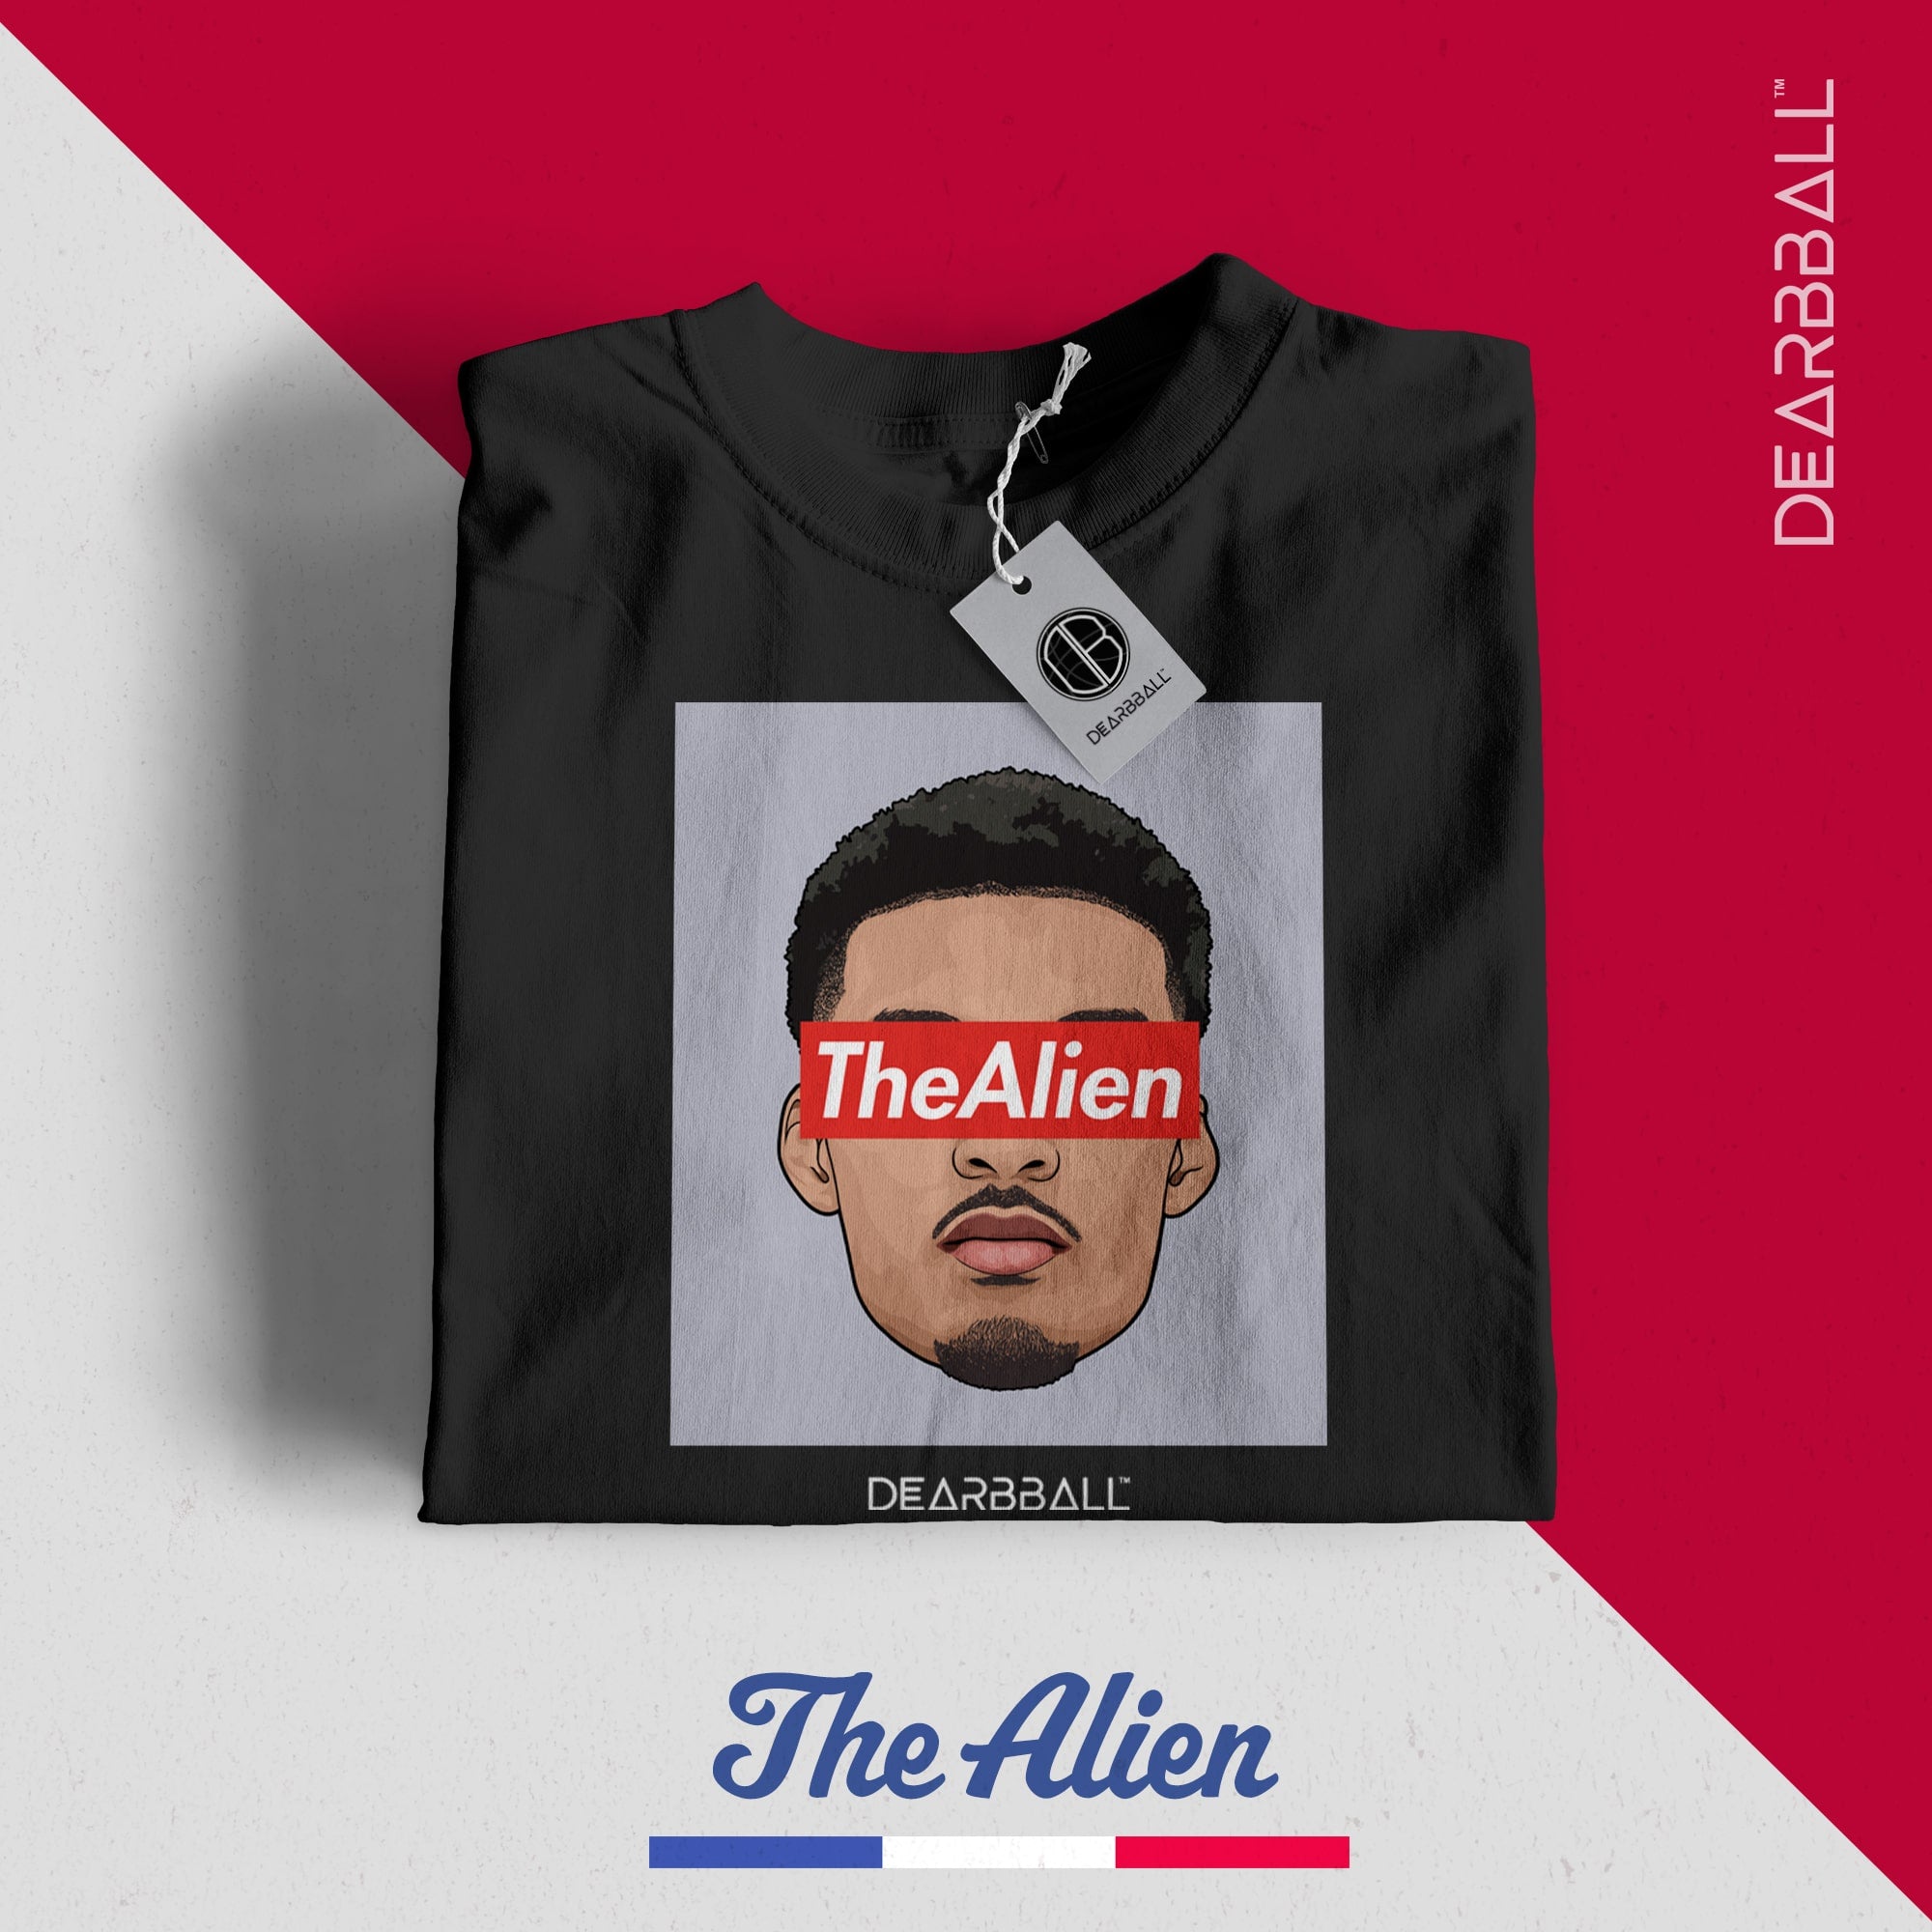 DearBBall T-Shirt - TheAlien Limited Edition